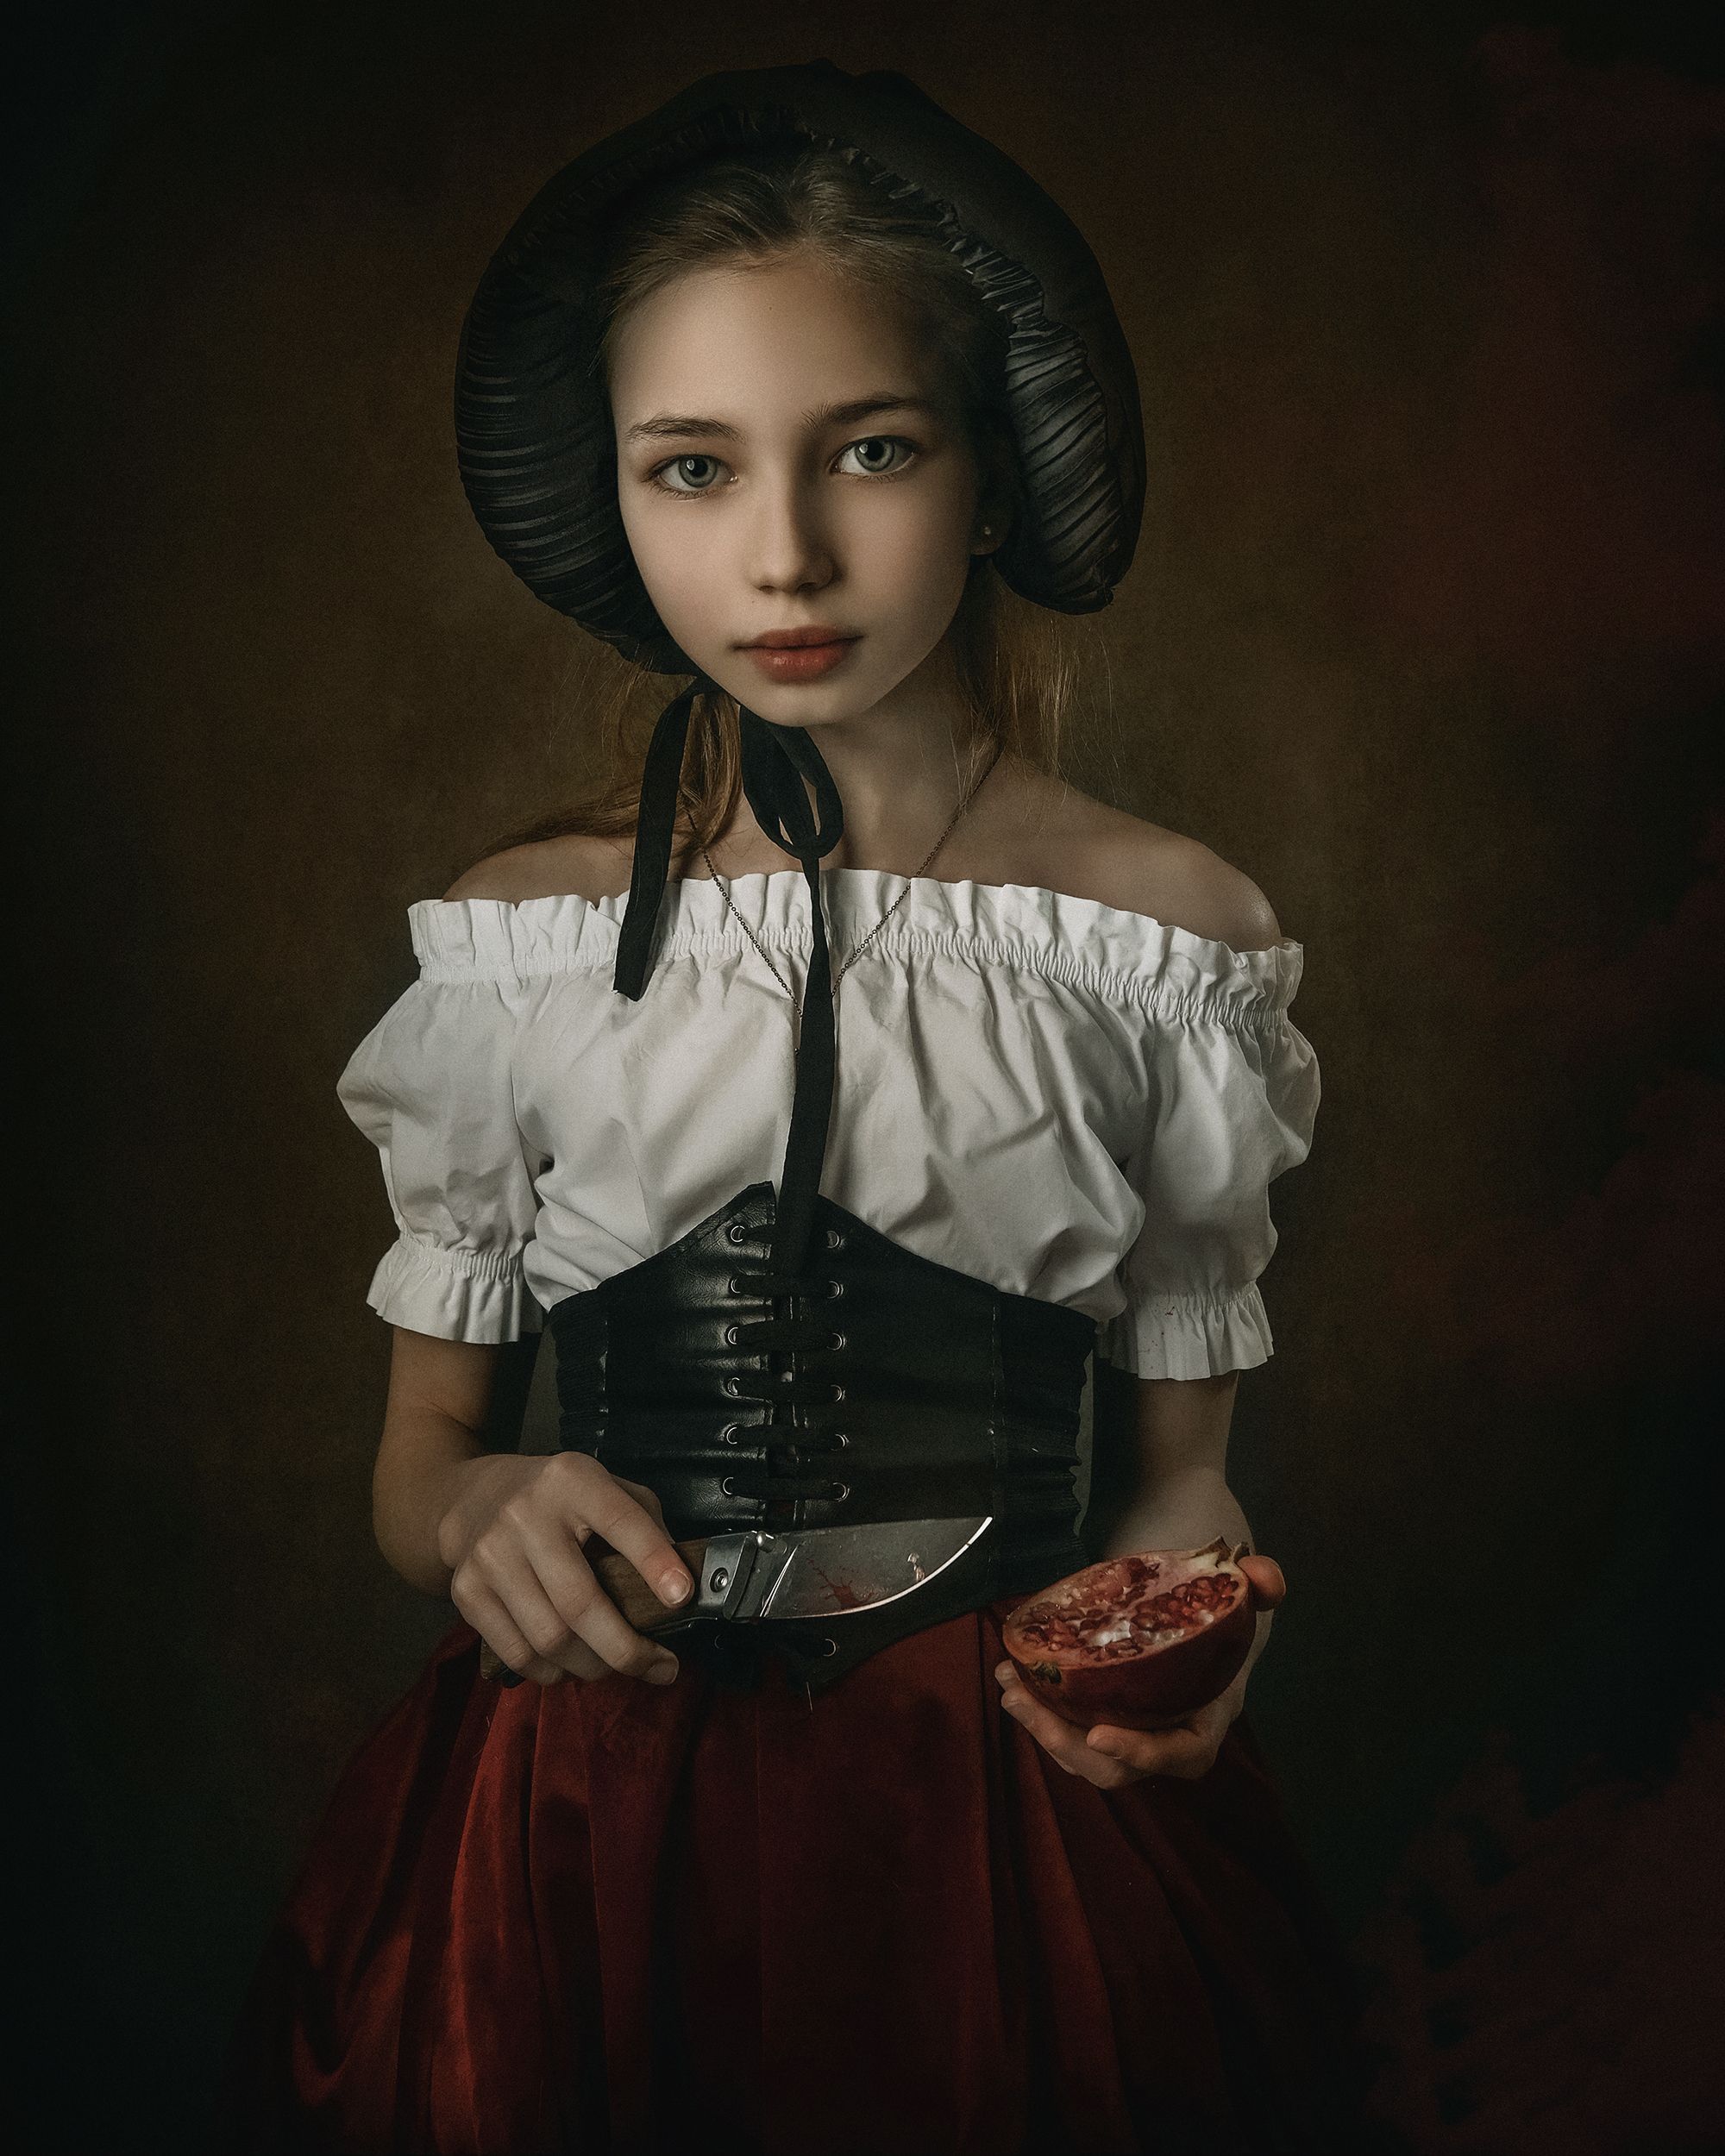 красная шапочка, детский портрет, фотограф, файнарт, художественный портрет, драма, Aleksandr Shvedov